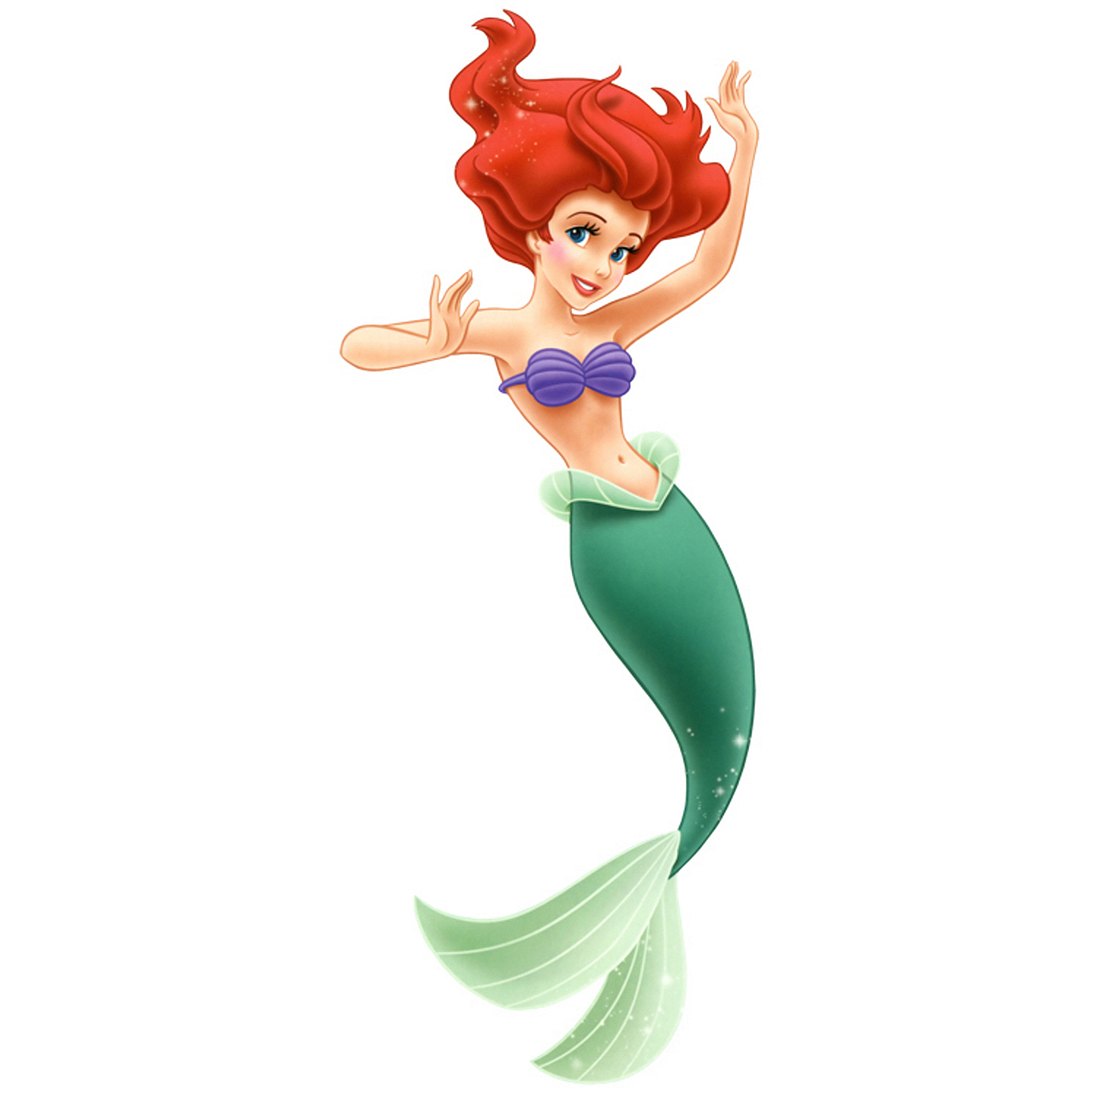 Hauptrolle in Disney-Verfilmung: SIE ist Arielle die Meerjungfrau!